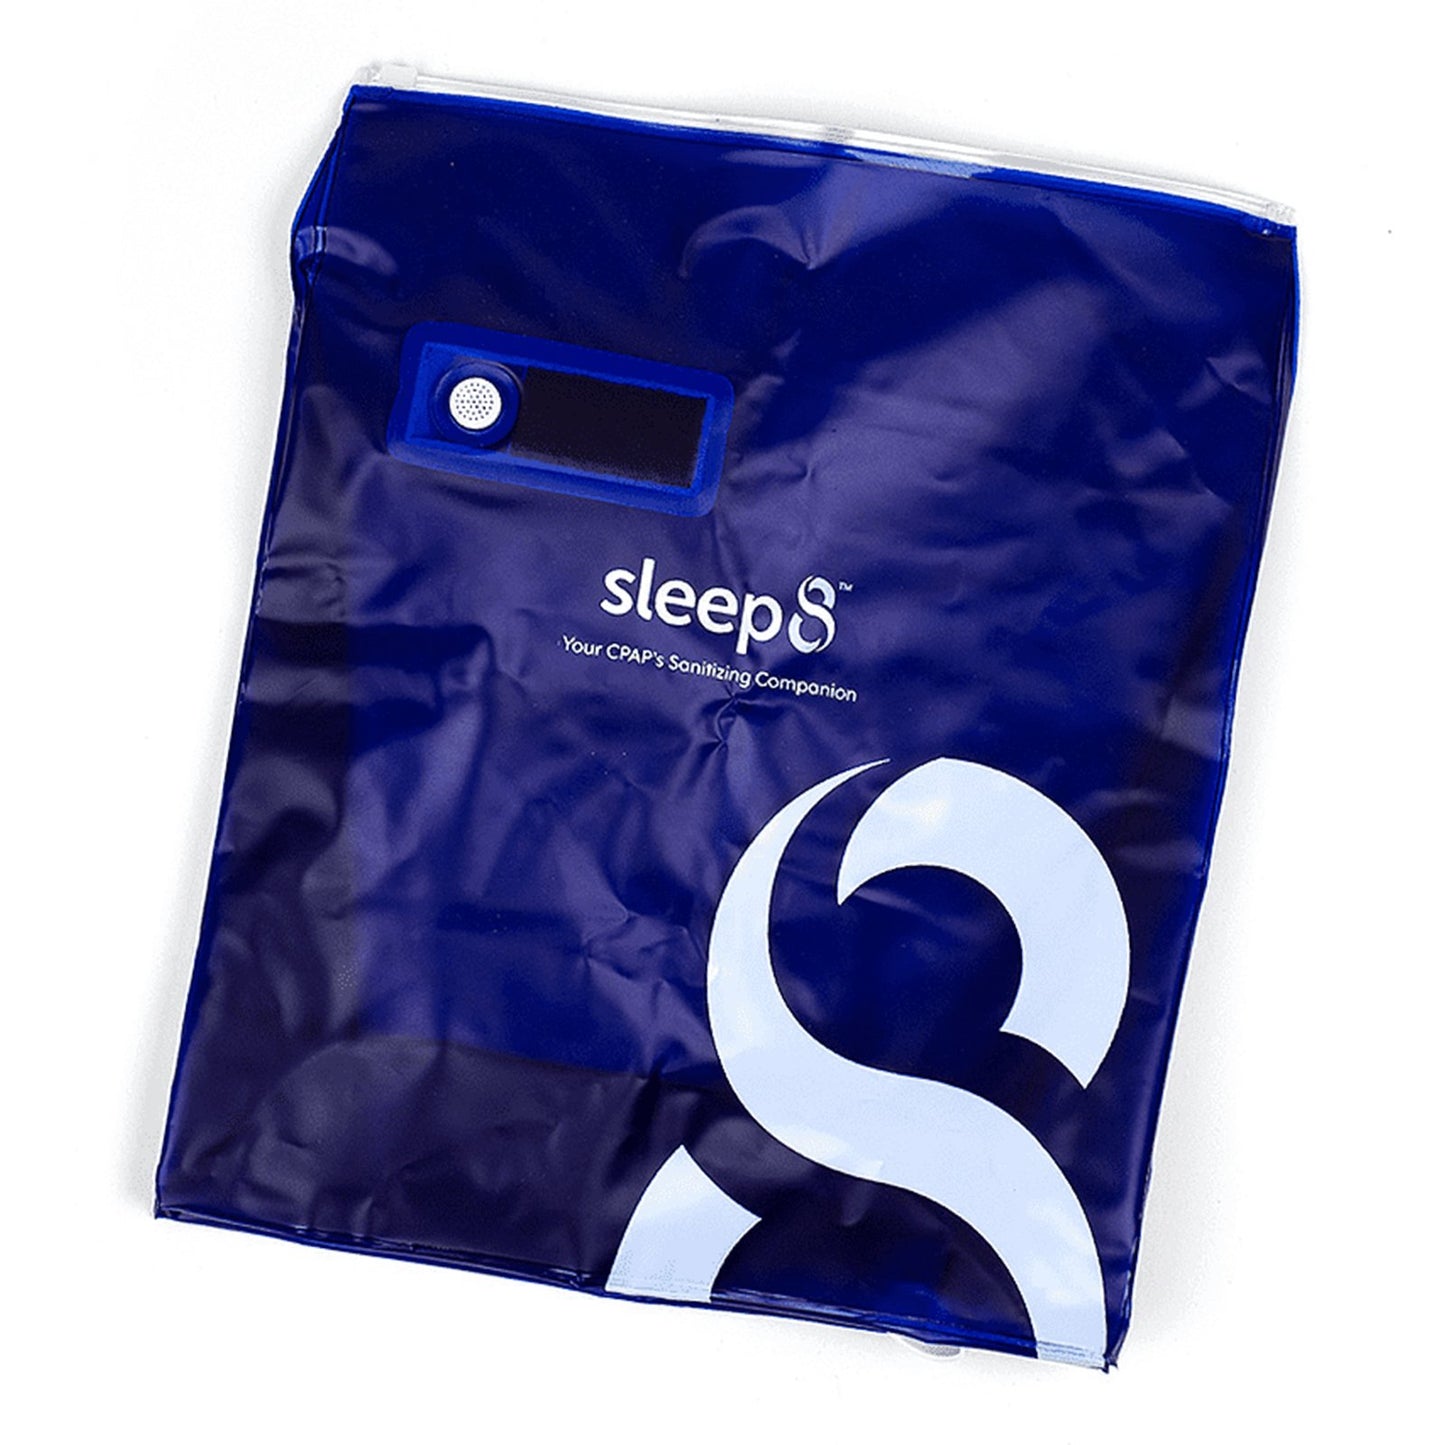 Sleep8 filter bag turned slightly. 